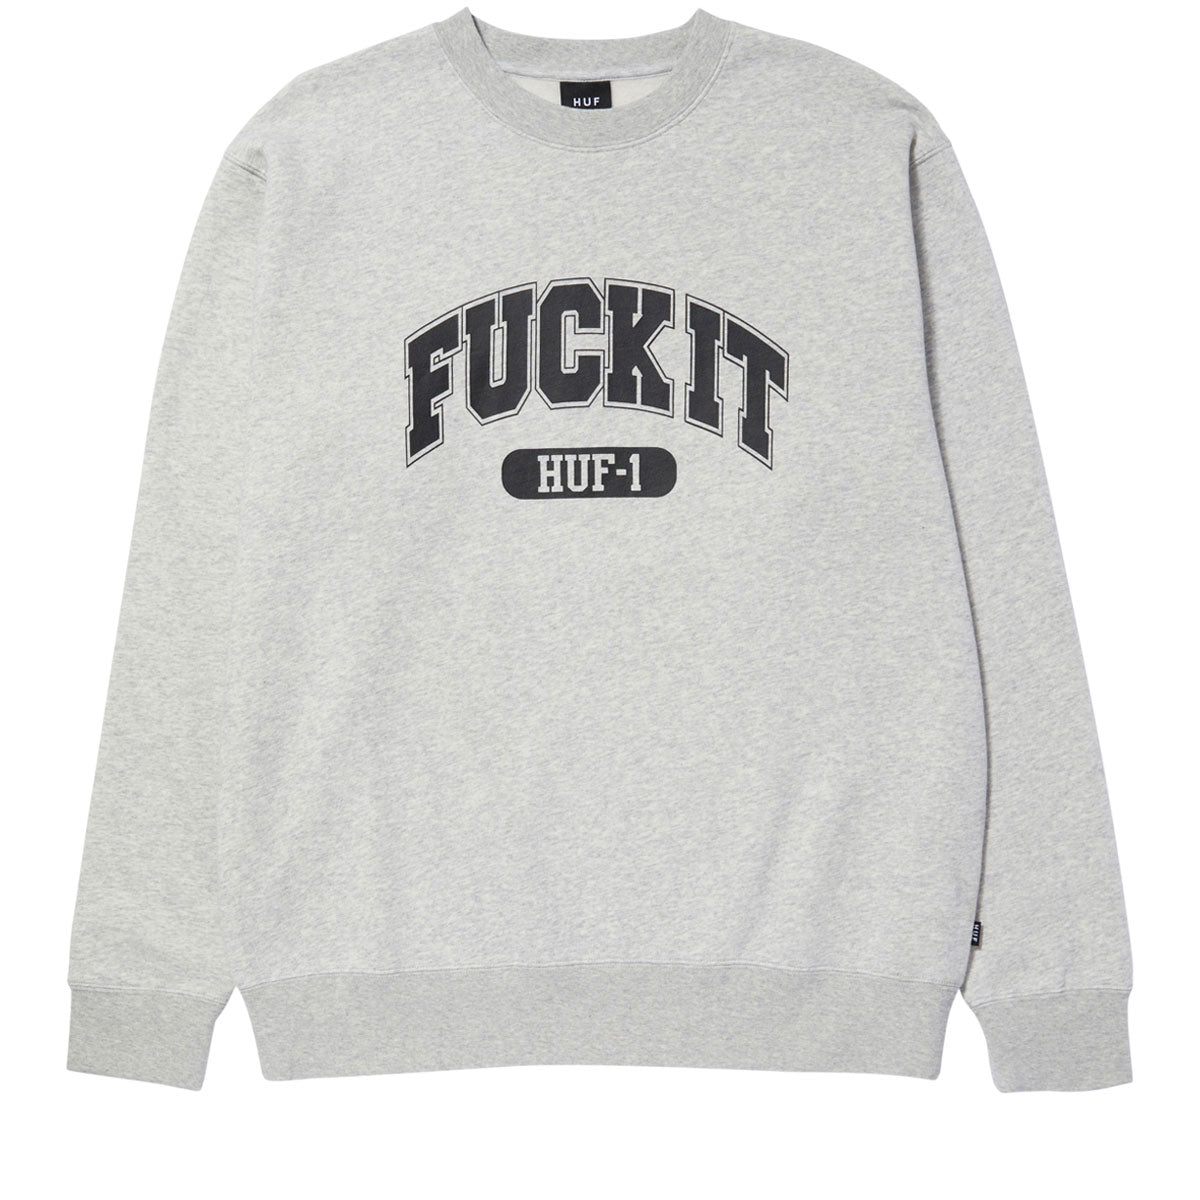 HUF Fuck It Crewneck Sweatshirt - Heather Grey image 1